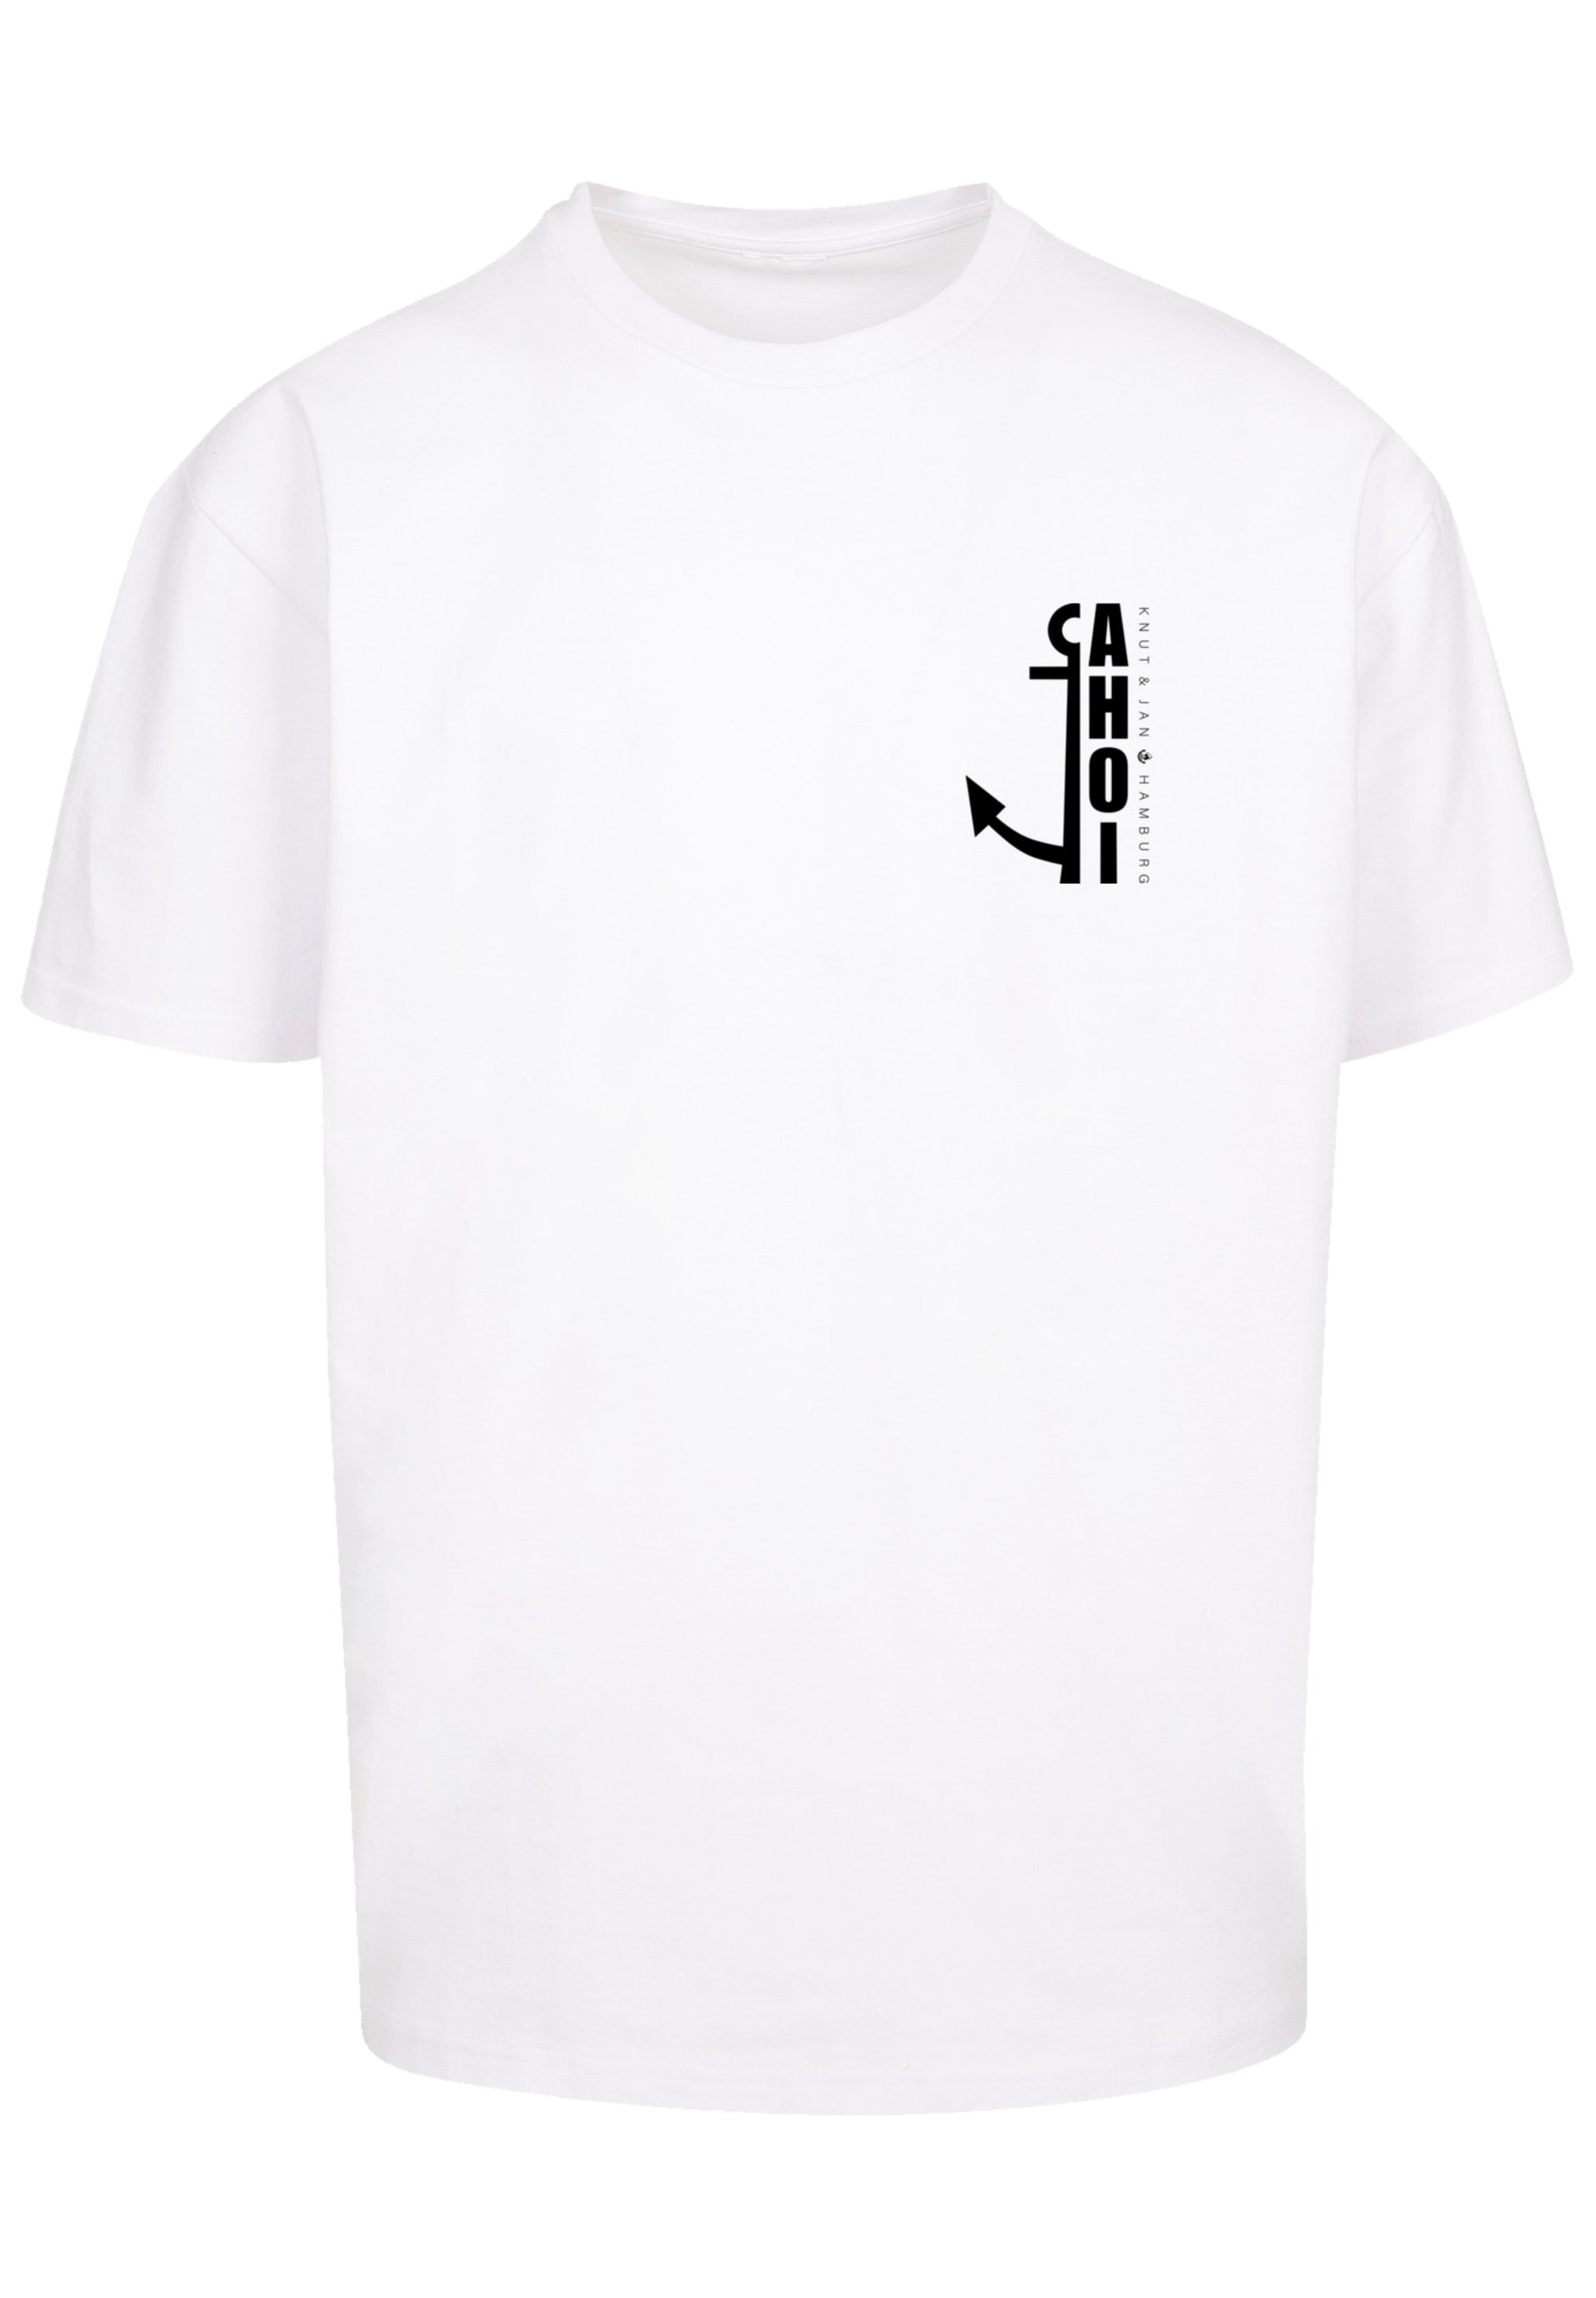 F4NT4STIC T-Shirt »Ahoi Anker Knut & Jan Hamburg«, Print